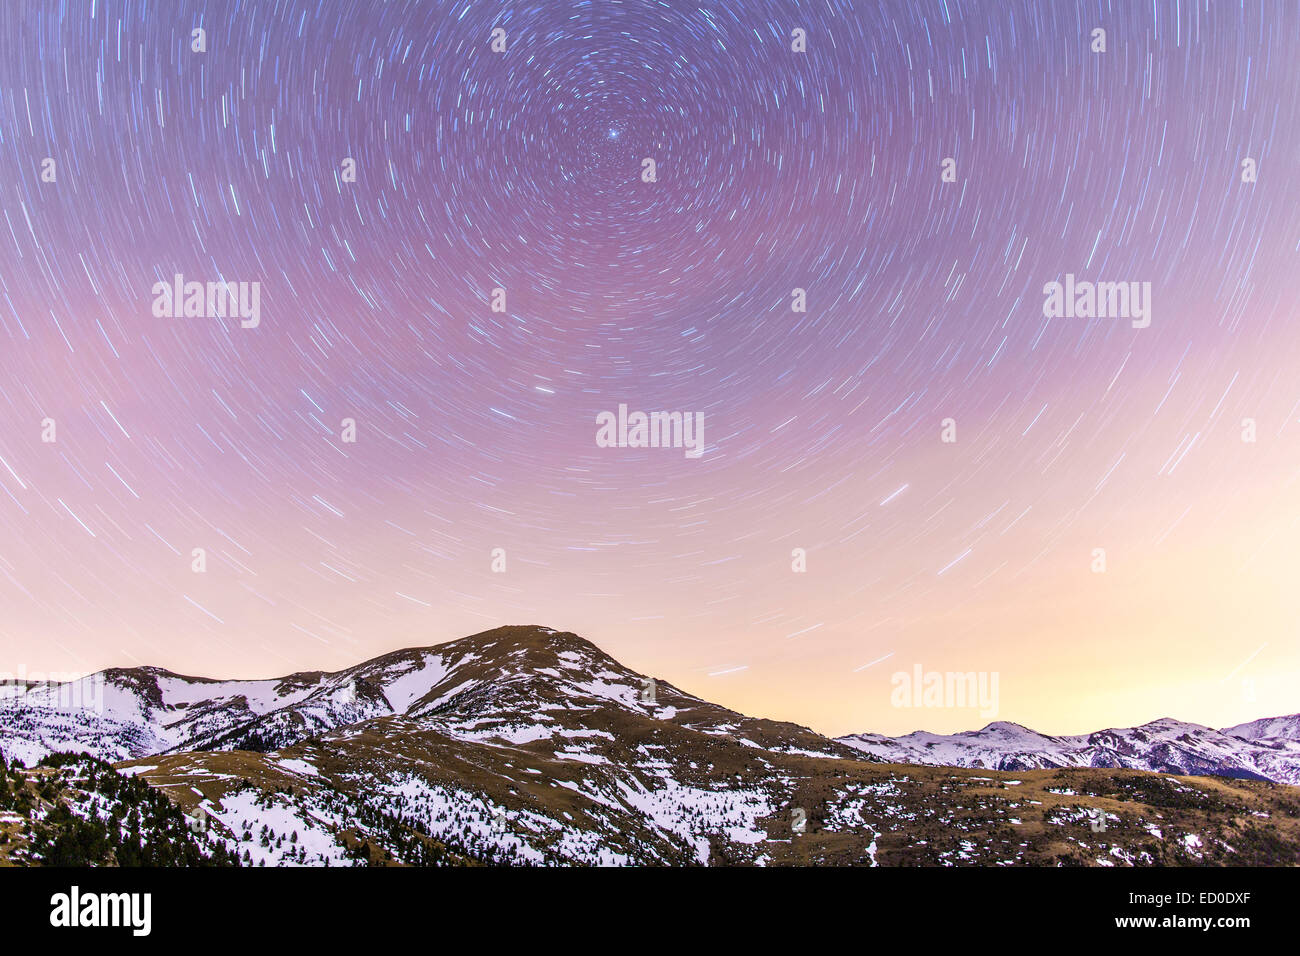 In Spagna, in Catalogna, Gerona, Pirenei, Star trail incappucciate di neve sopra la gamma della montagna Foto Stock